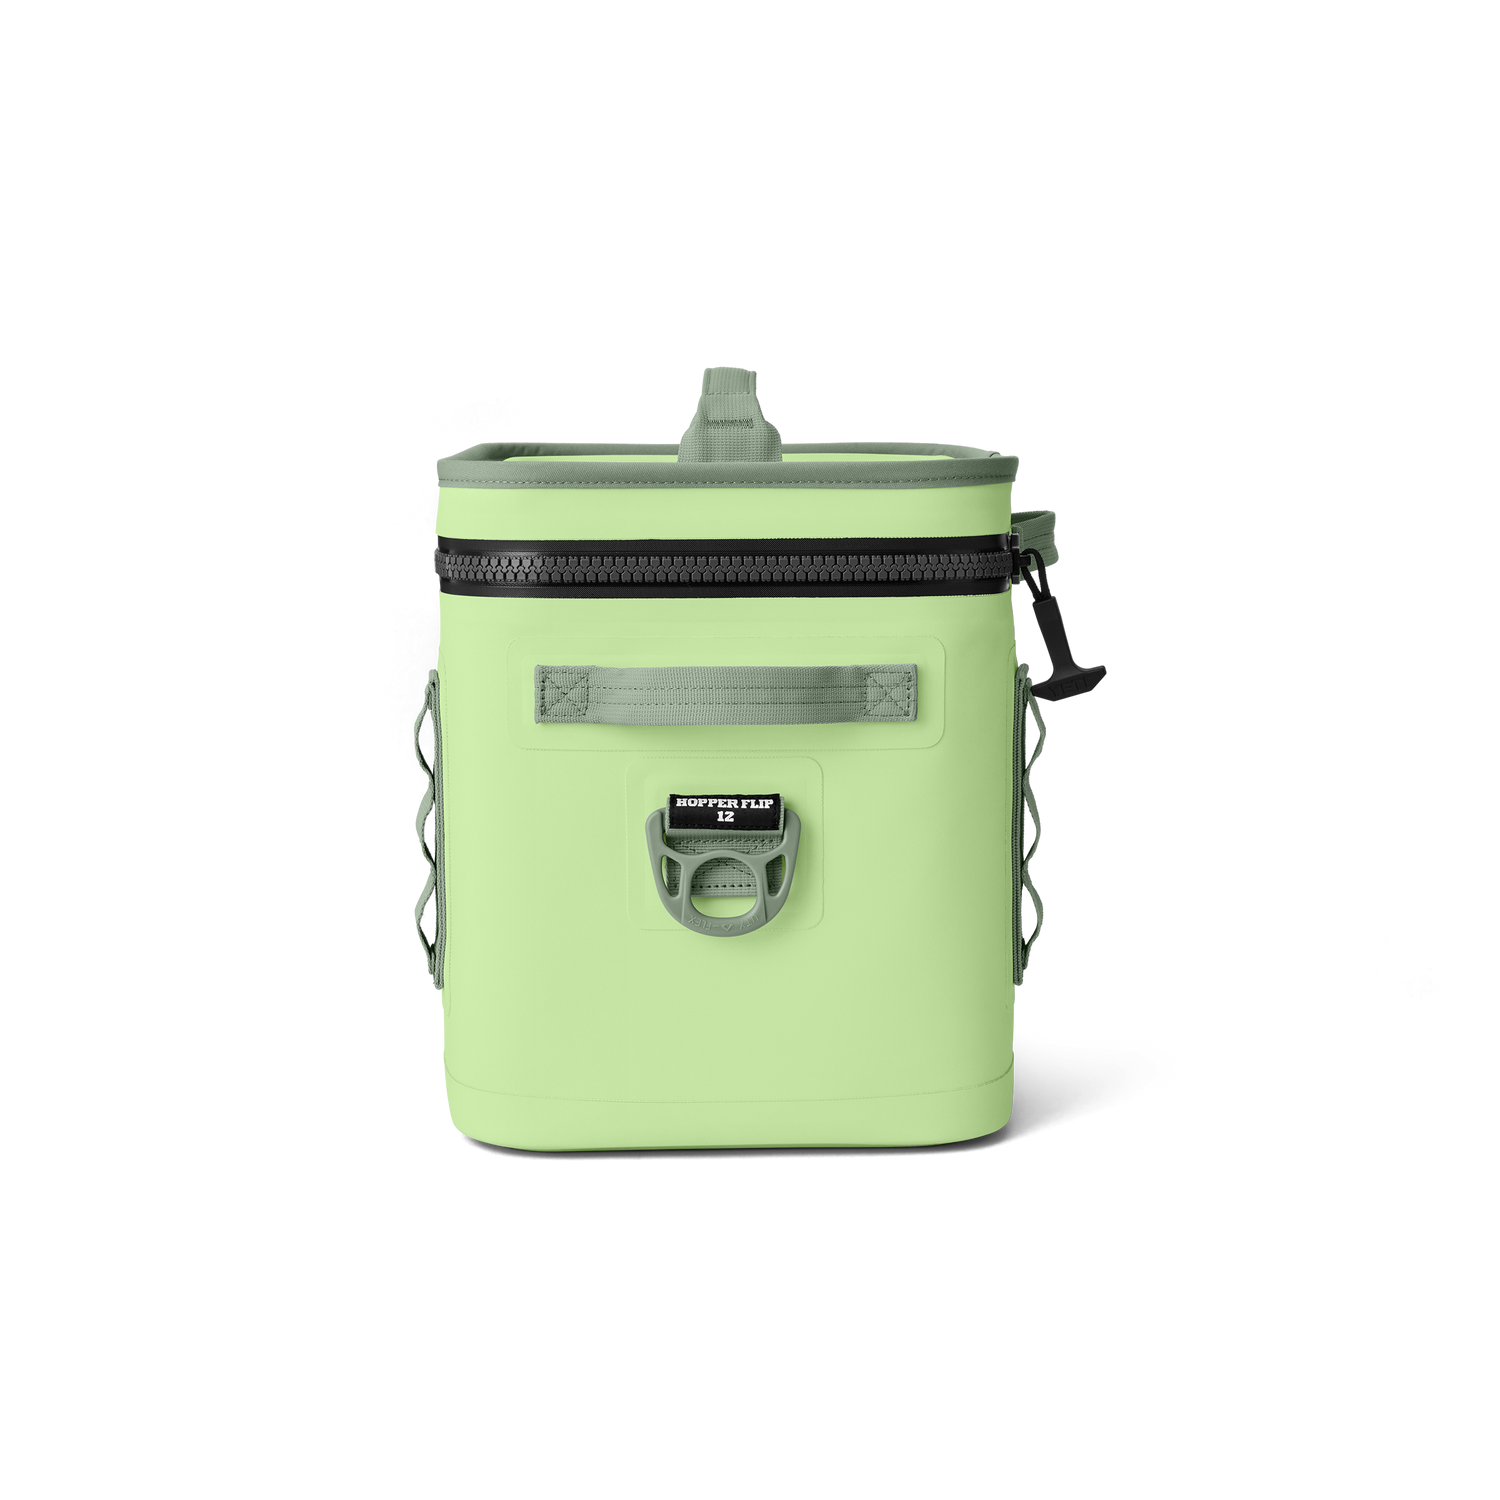 YETI Hopper Flip® 12 Soft Cooler Key Lime